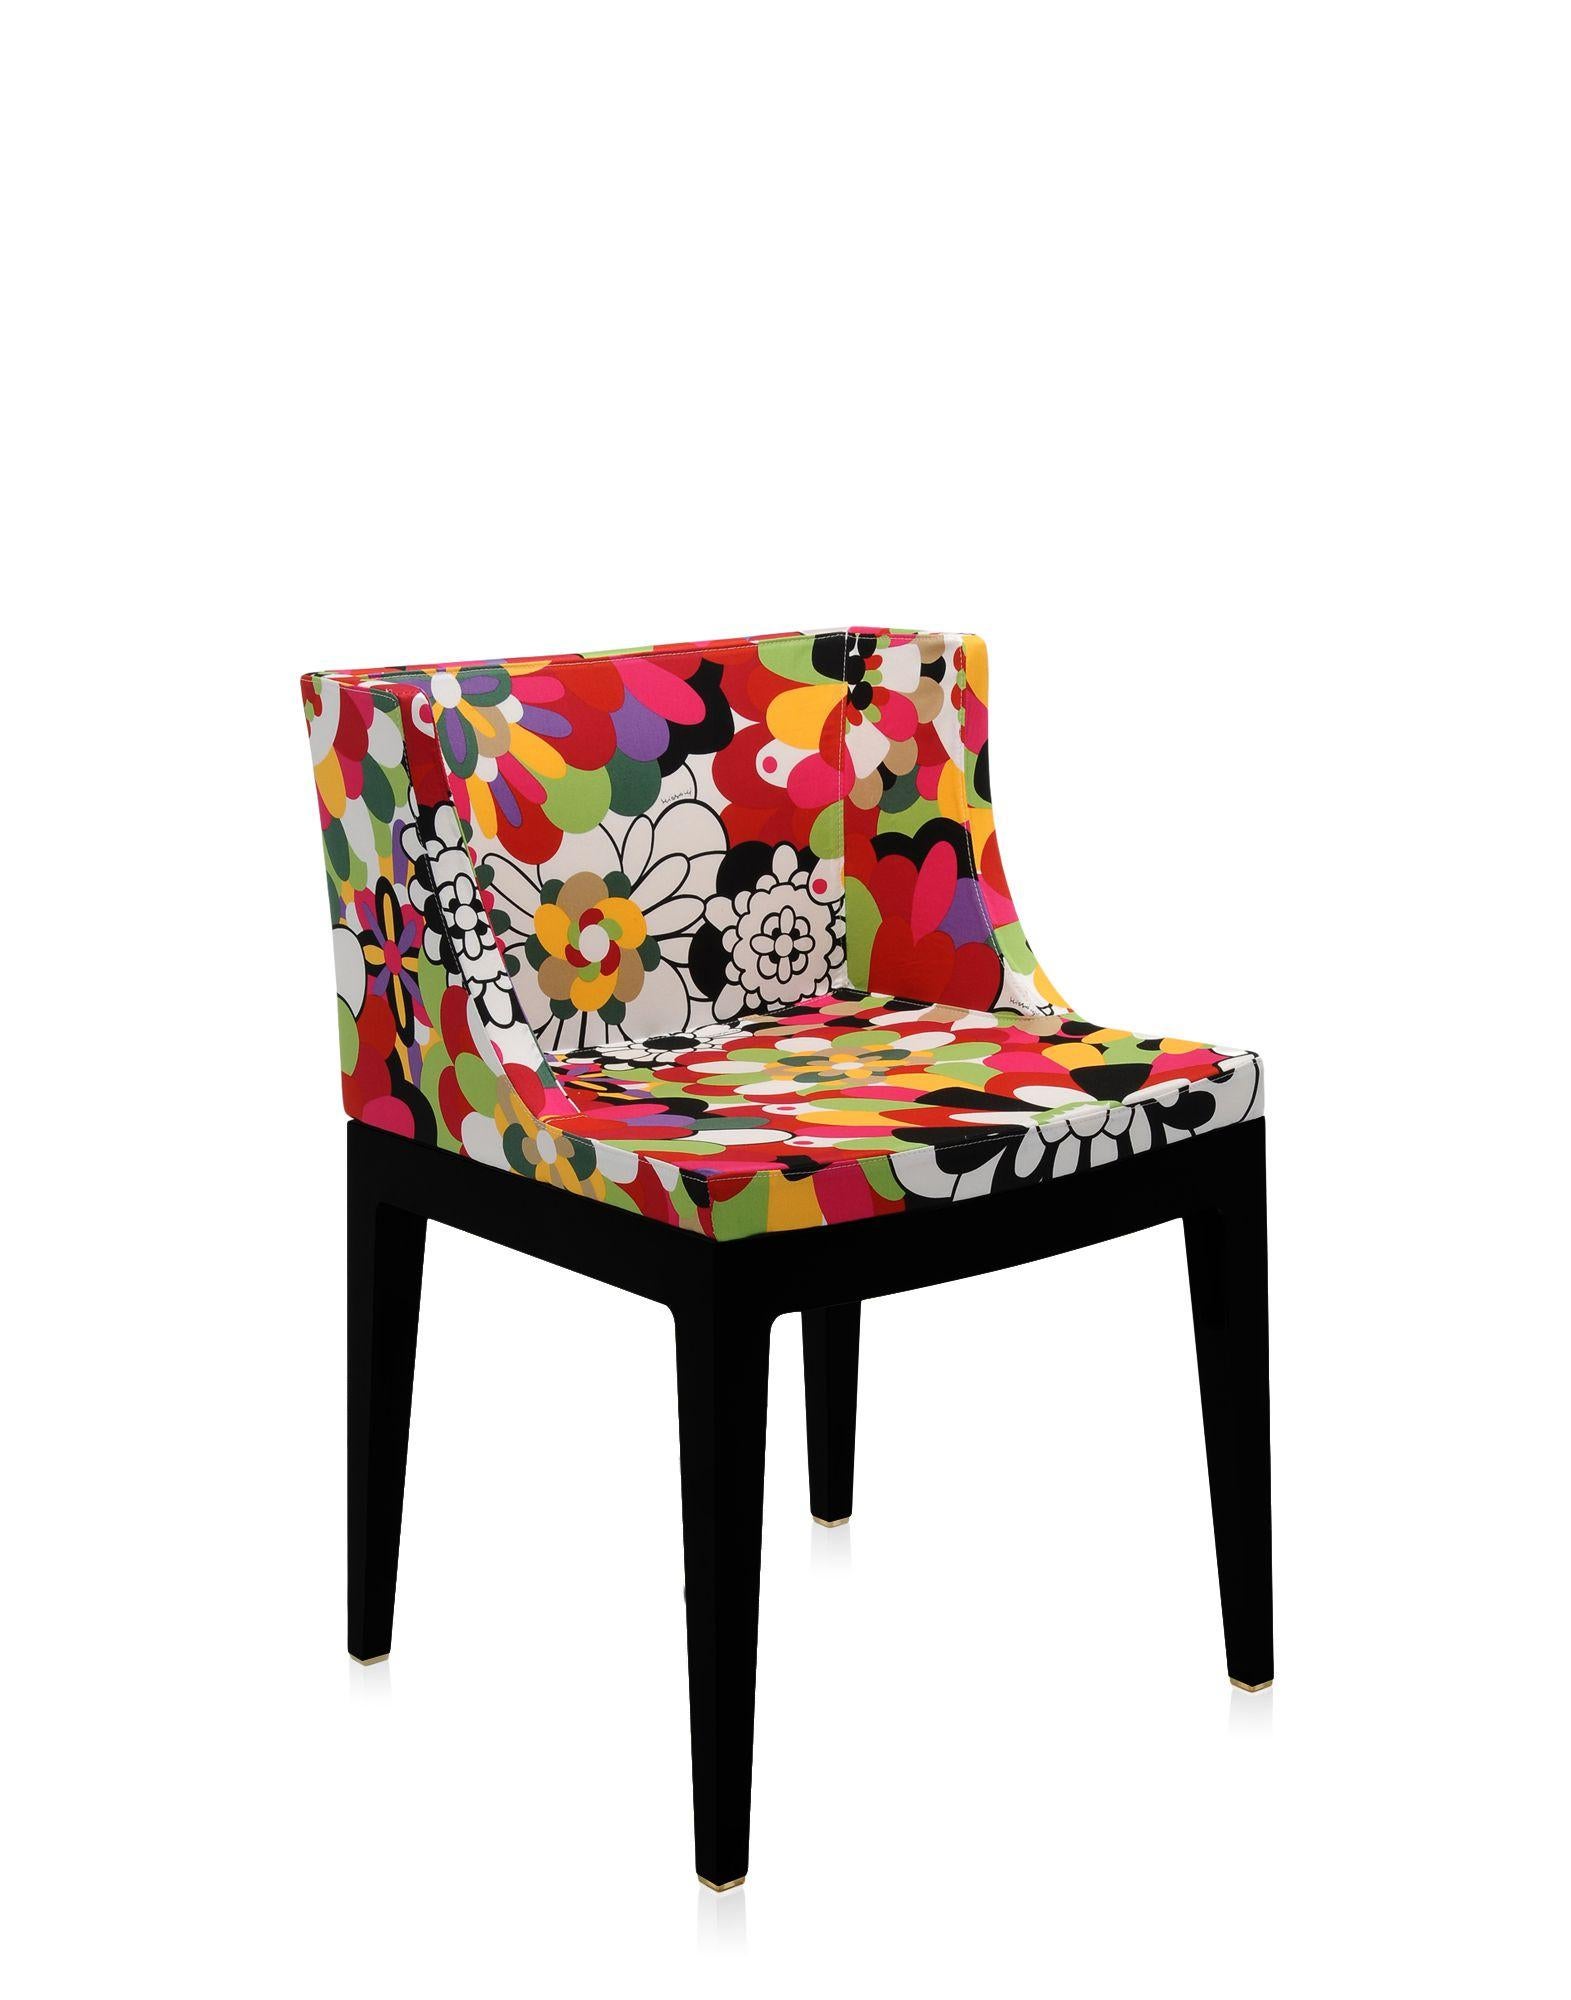 Le fauteuil Mademoiselle est habillé de la large gamme de tissus Memphis, conçus par Ettore Sottsass et Nathalie du Pasquier.
Il est proposé avec un cadre transparent ou noir.
  